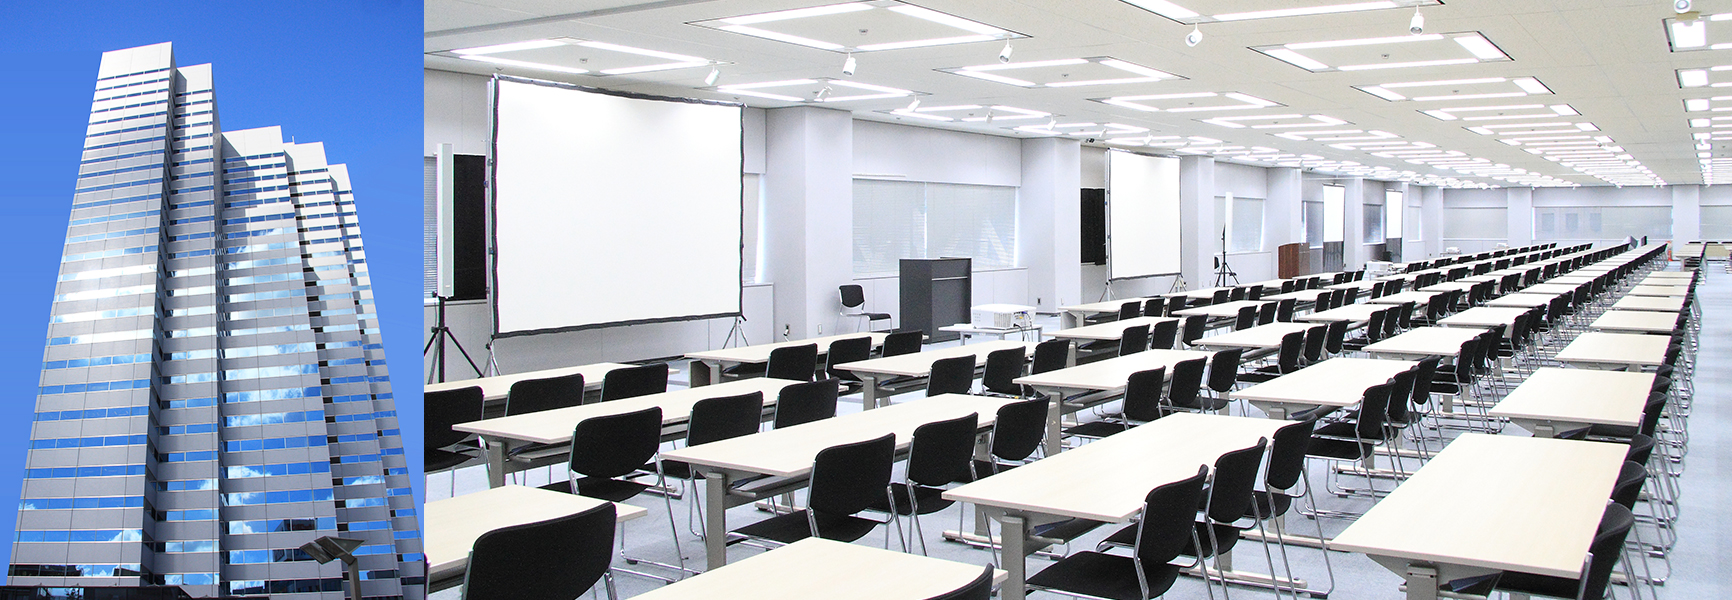 新宿エルタワーサンスカイルーム 貸会議室 セミナールーム イベントホール